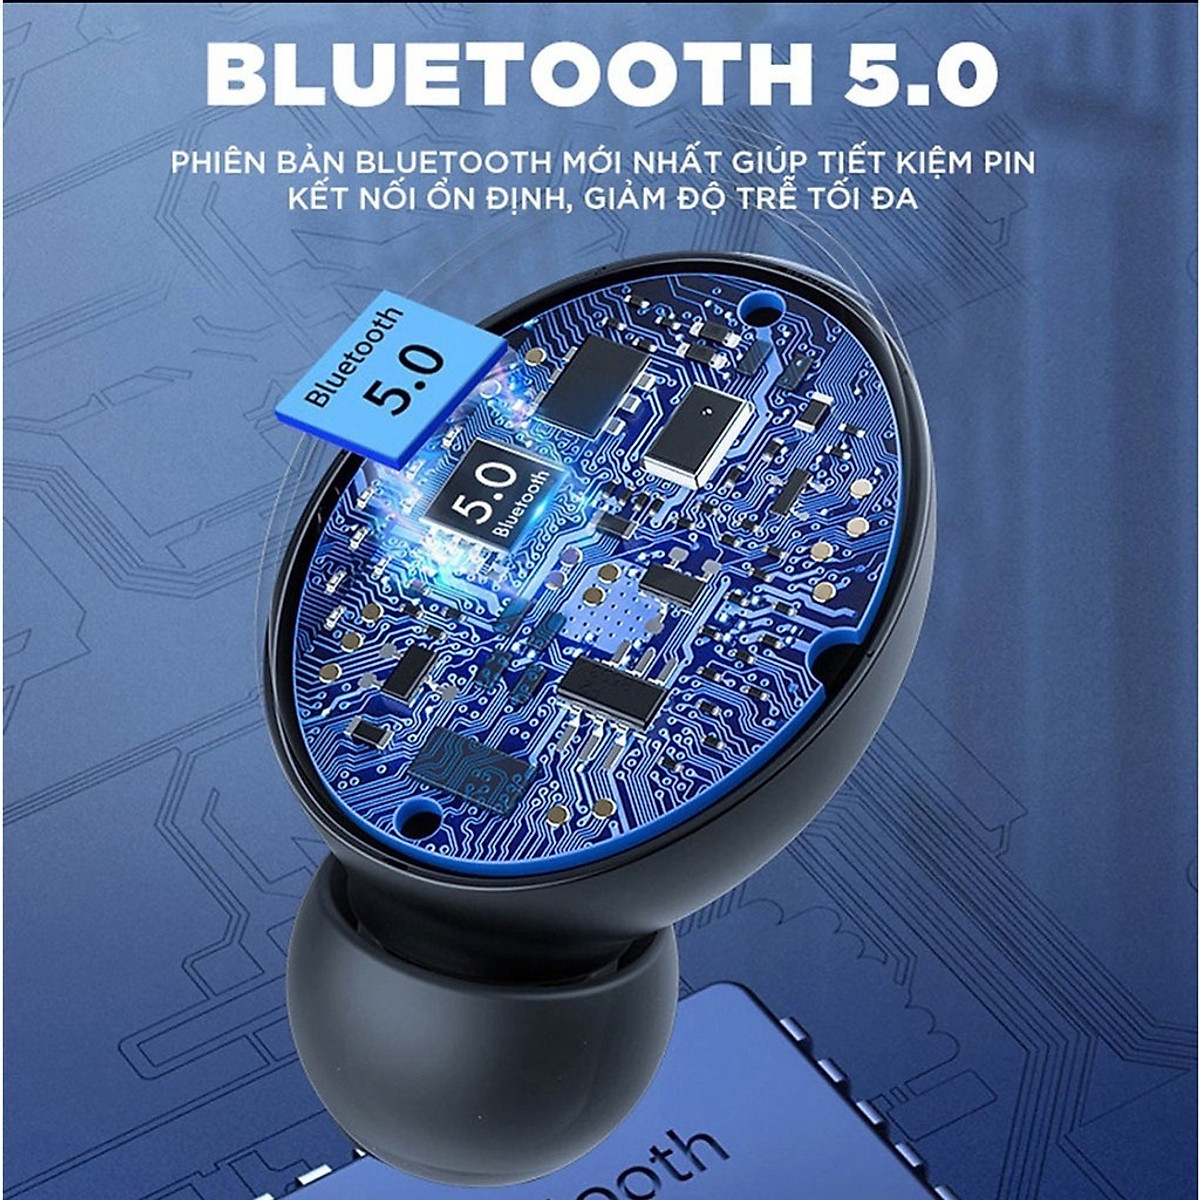 Tai nghe bluetooth ROYALMIC F9 Pro 5.0 - Tai nghe nhét tai kết nối không dây phiên bản quốc tế - Âm bass êm và sâu, chip AIC chống gây chói tai - Thiết kế thời thượng, hiện đại - Hàng Chính Hãng